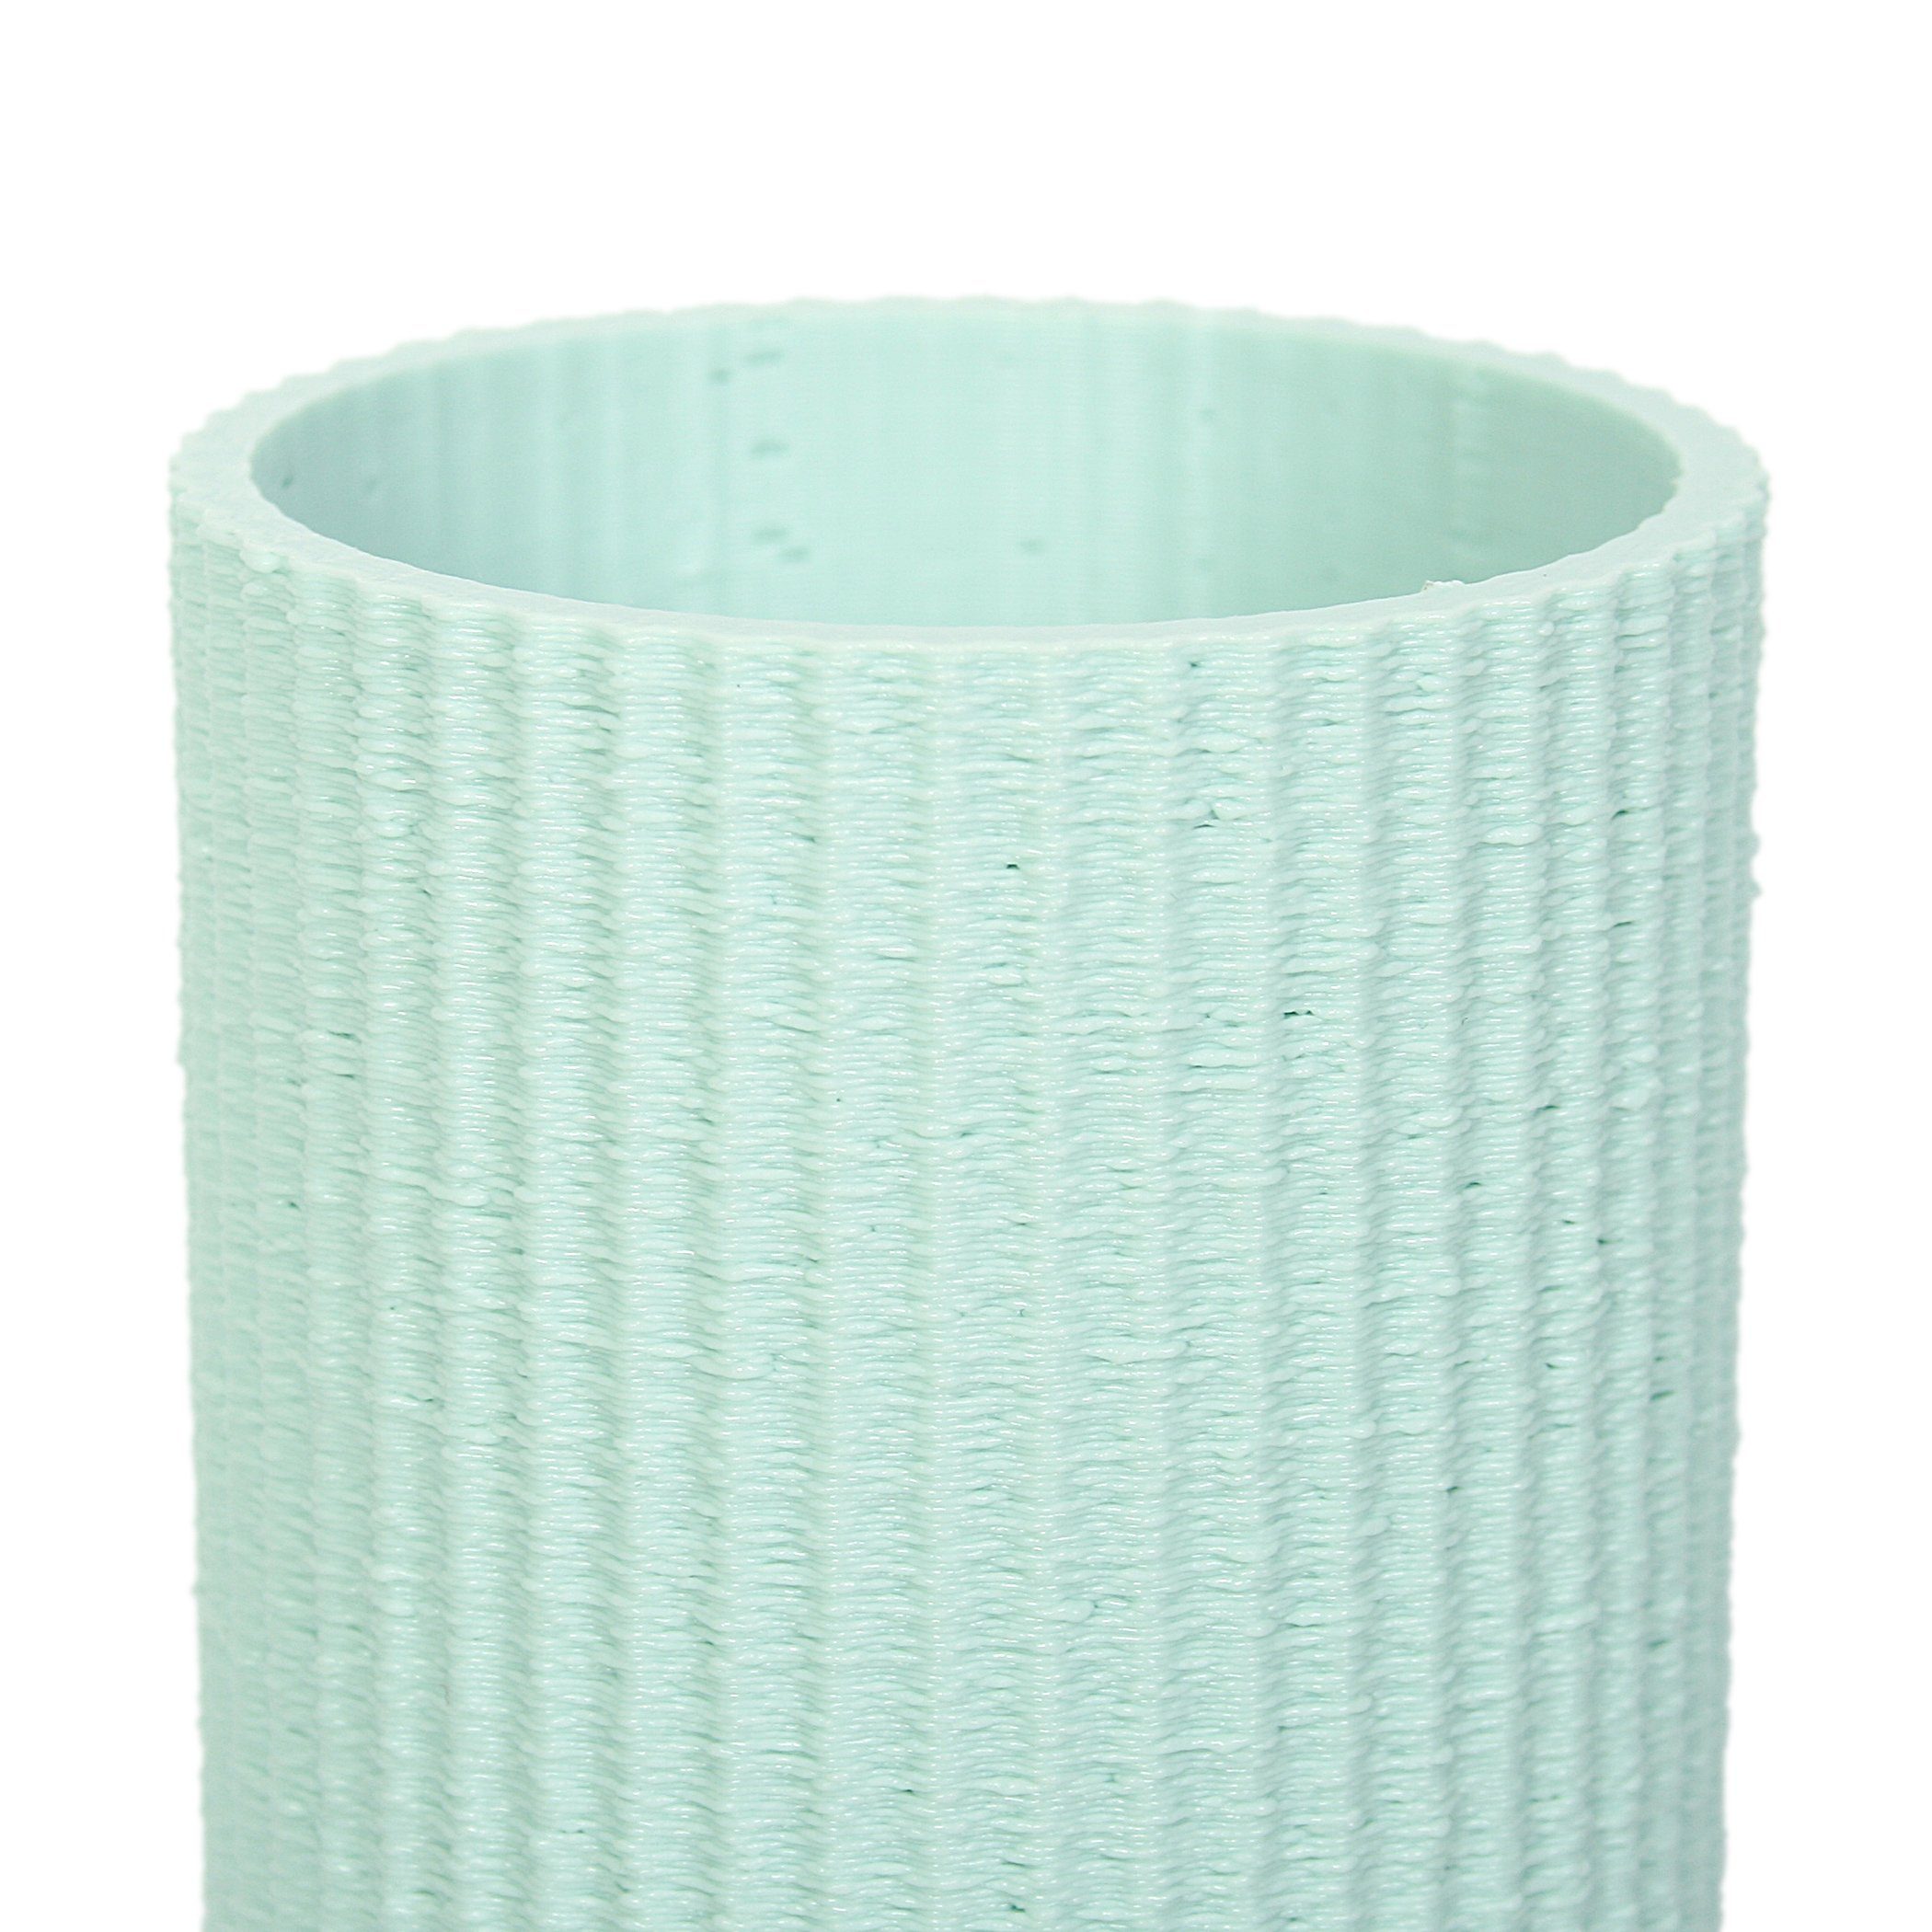 Kreative Feder Dekovase Designer Vase Green Bio-Kunststoff, Water Dekorative – Rohstoffen; & bruchsicher nachwachsenden wasserdicht Blumenvase aus aus